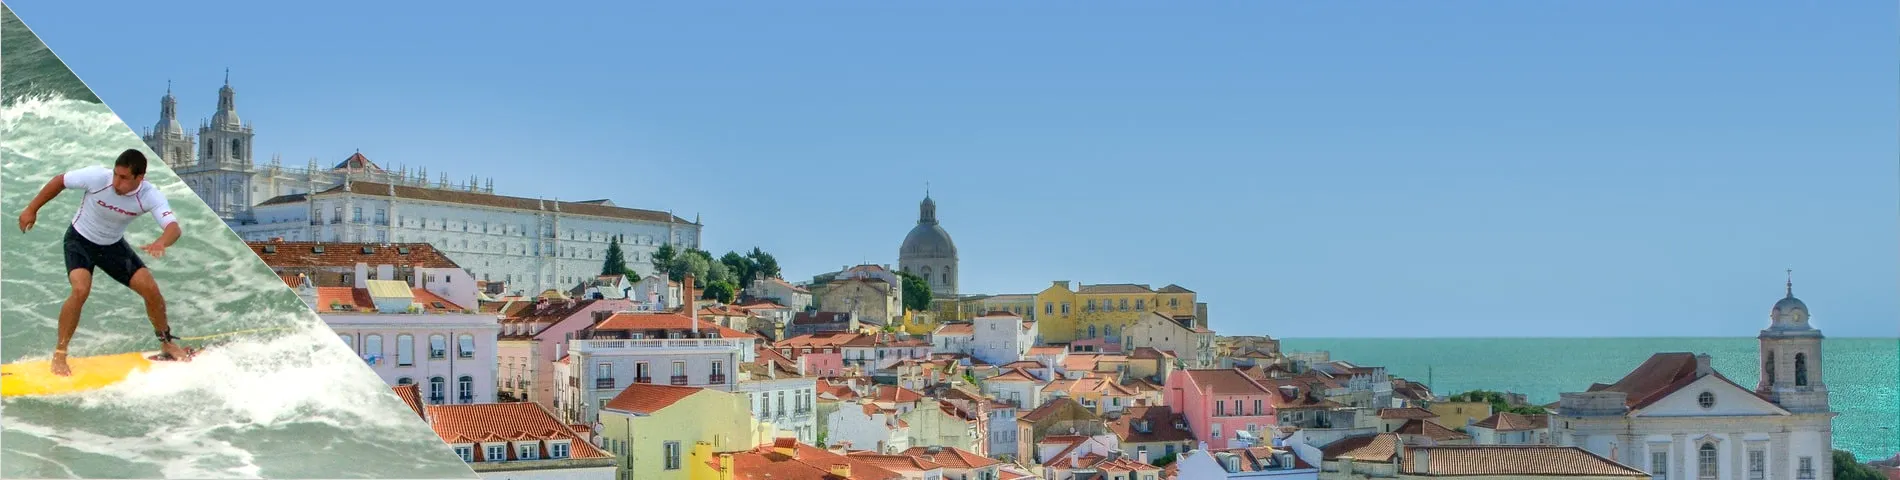 Лісабон - португальська та серфінг